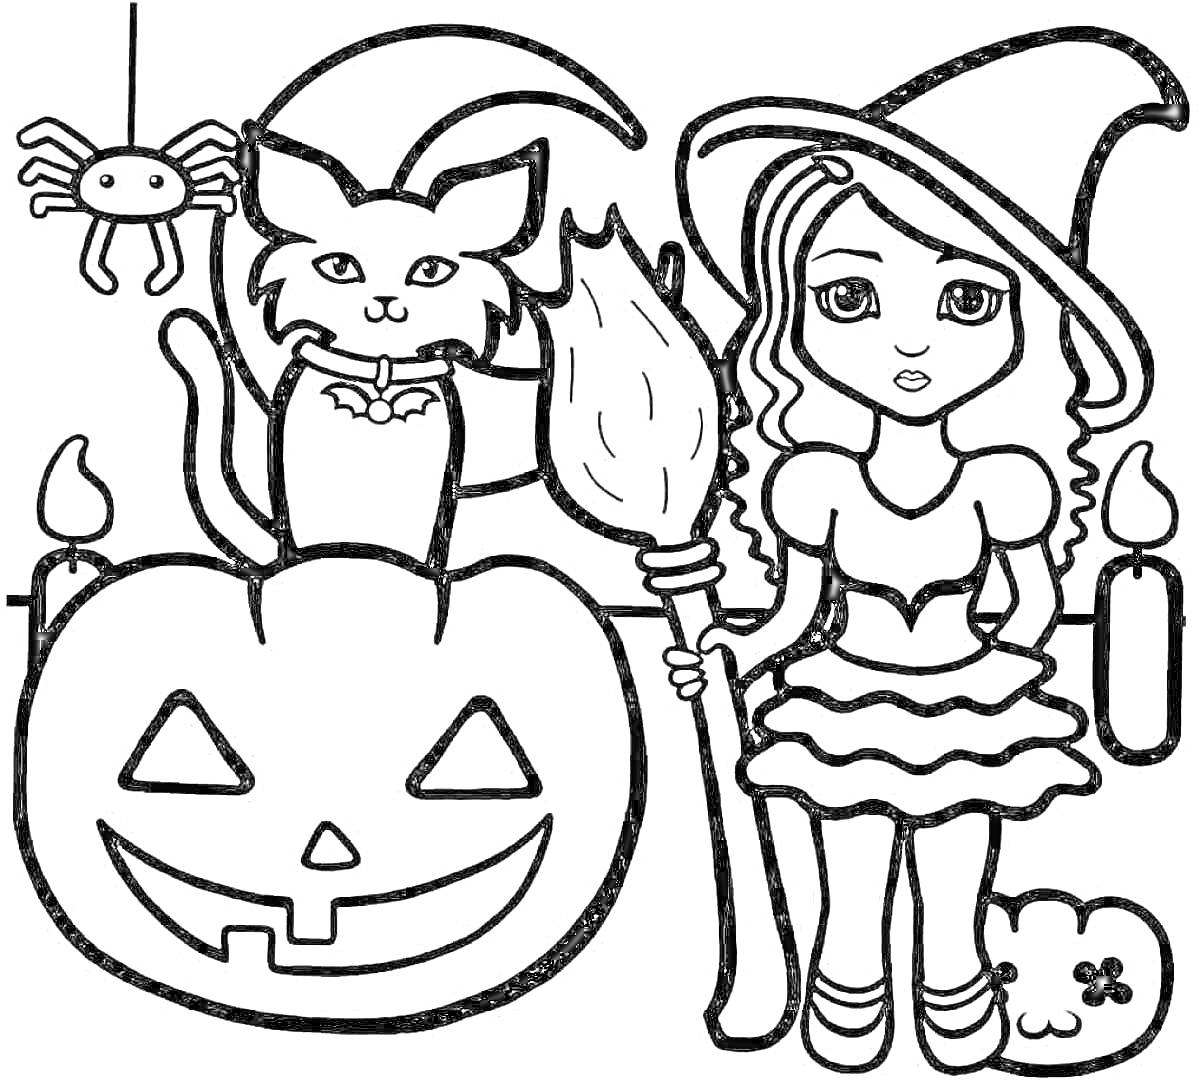 Раскраска Девочка ведьма с метлой, черная кошка на тыкве, висячий паук, две свечи и привидение